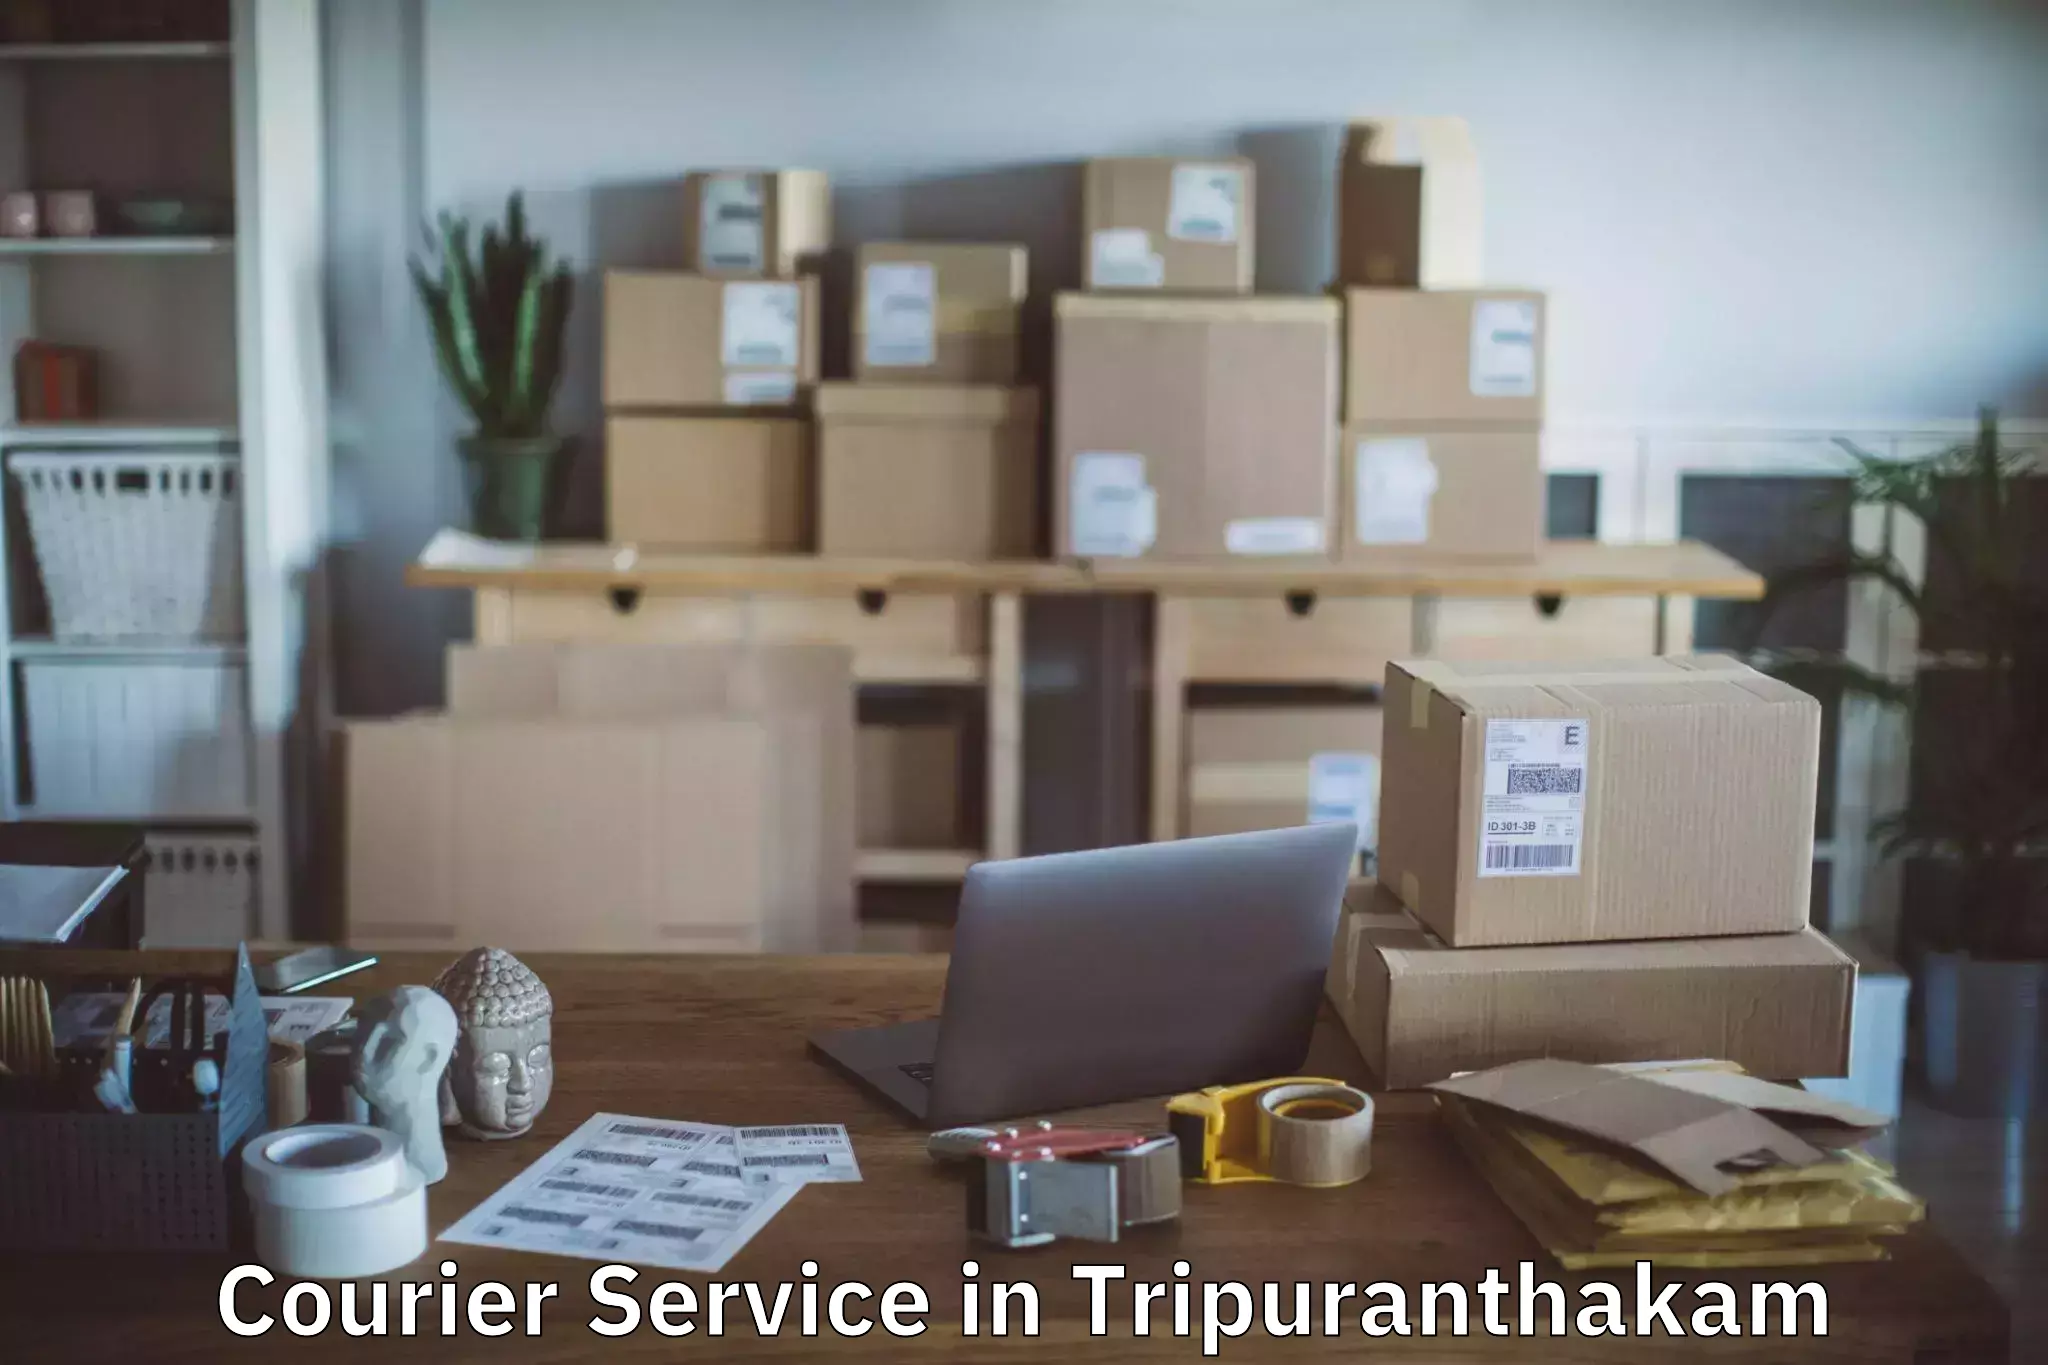 Customer-focused courier in Tripuranthakam